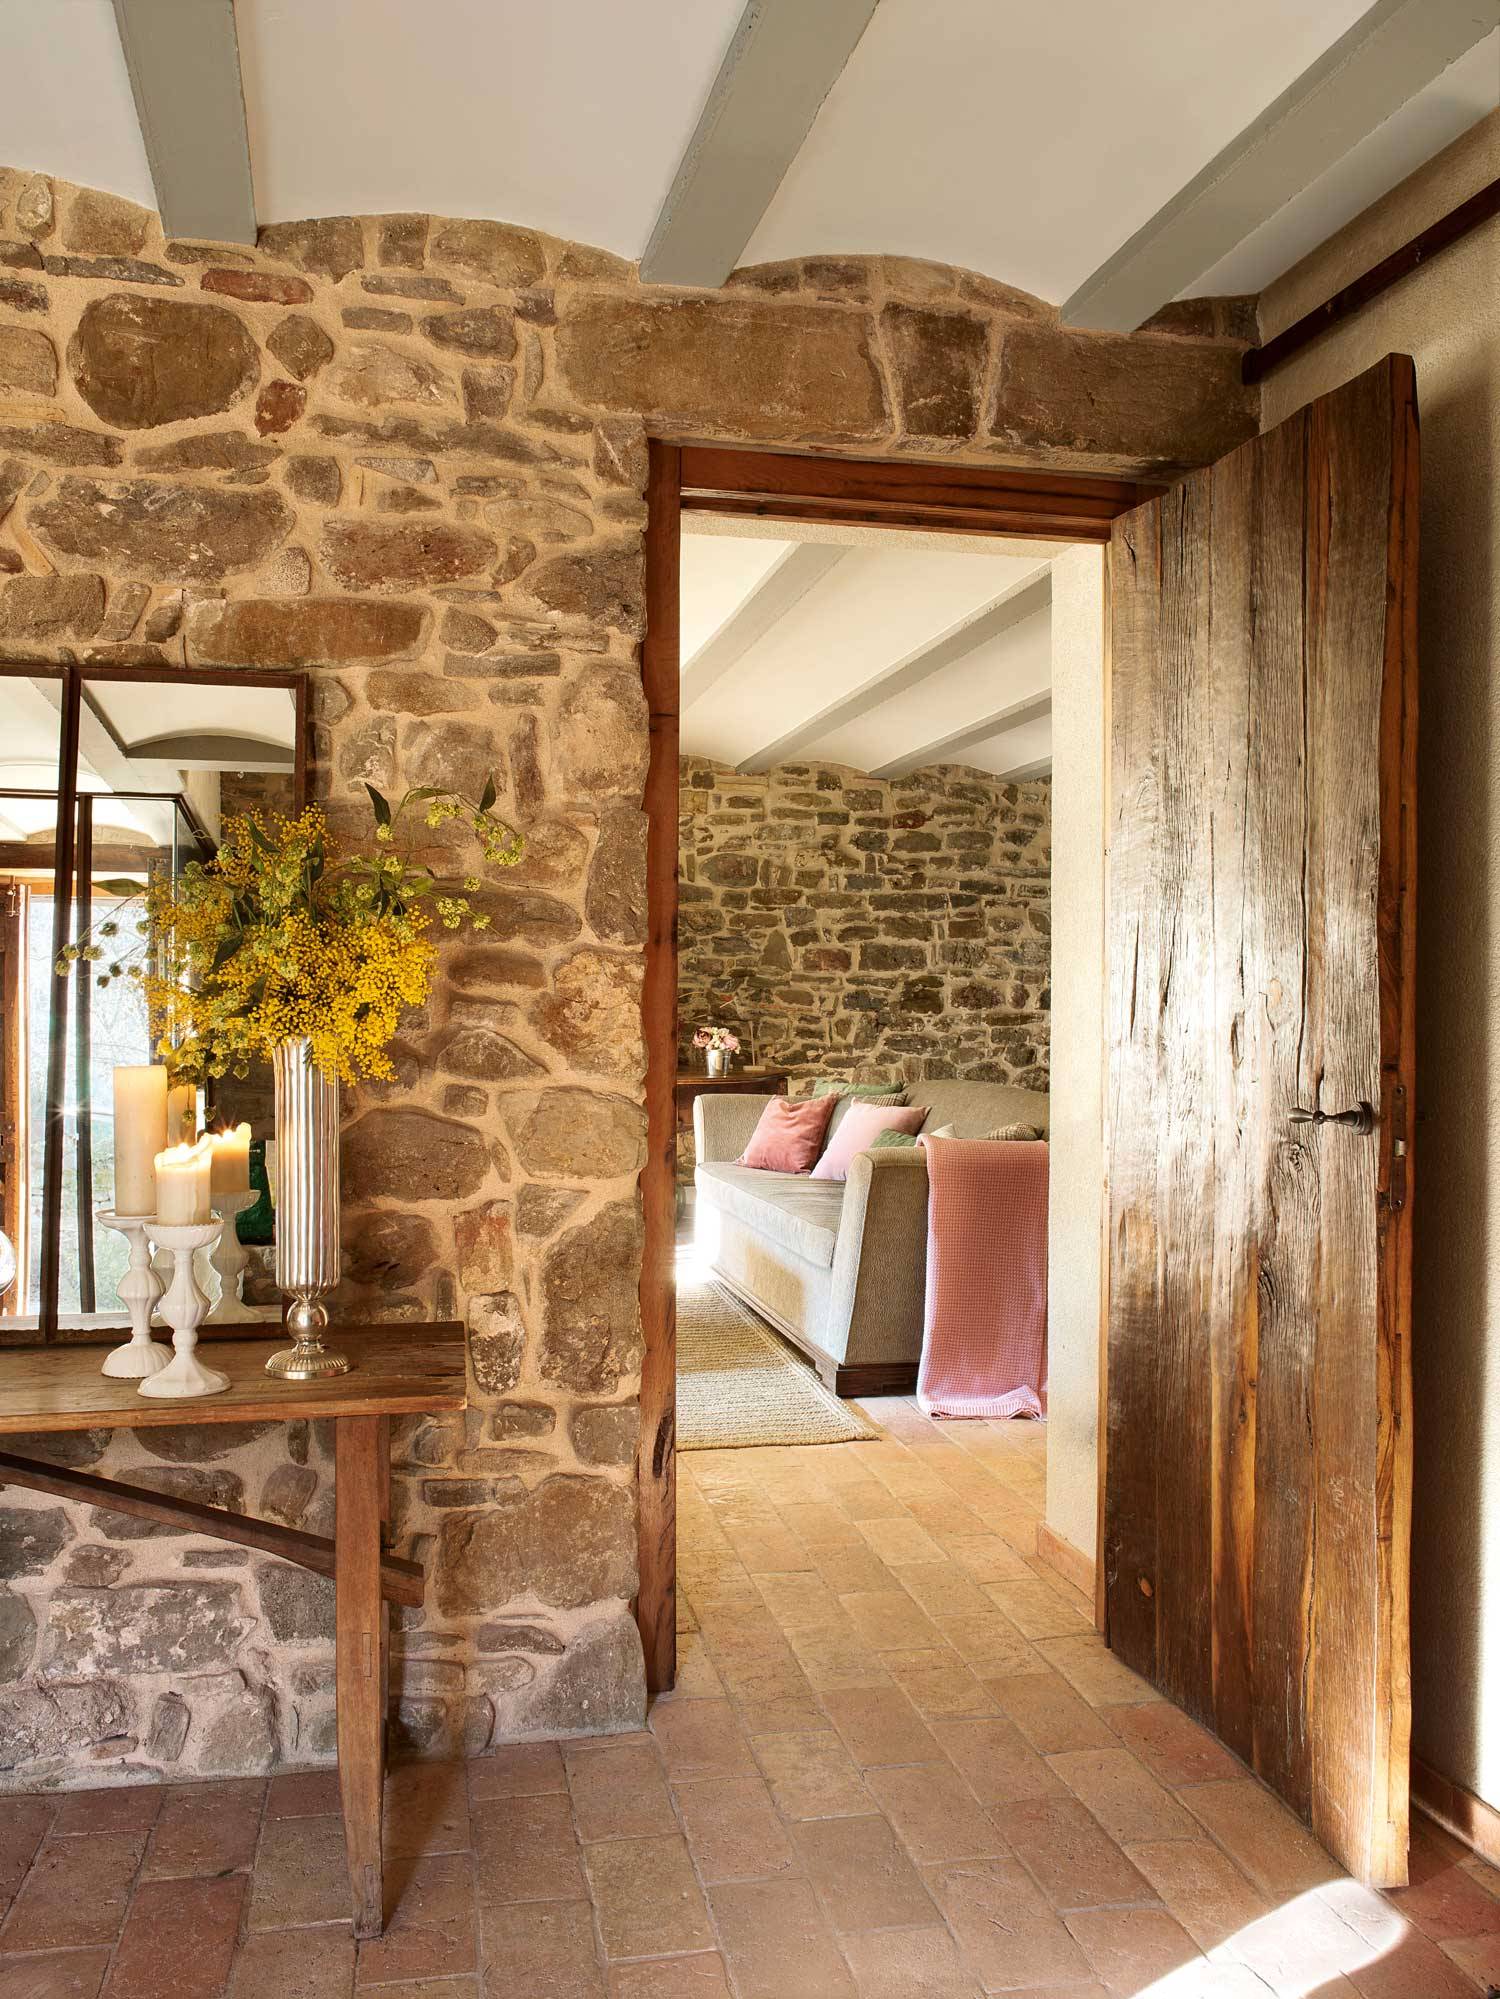 Recibidor rústico con pared de piedra, puerta de madera, consola de madera, espejo, velas y mimosas.